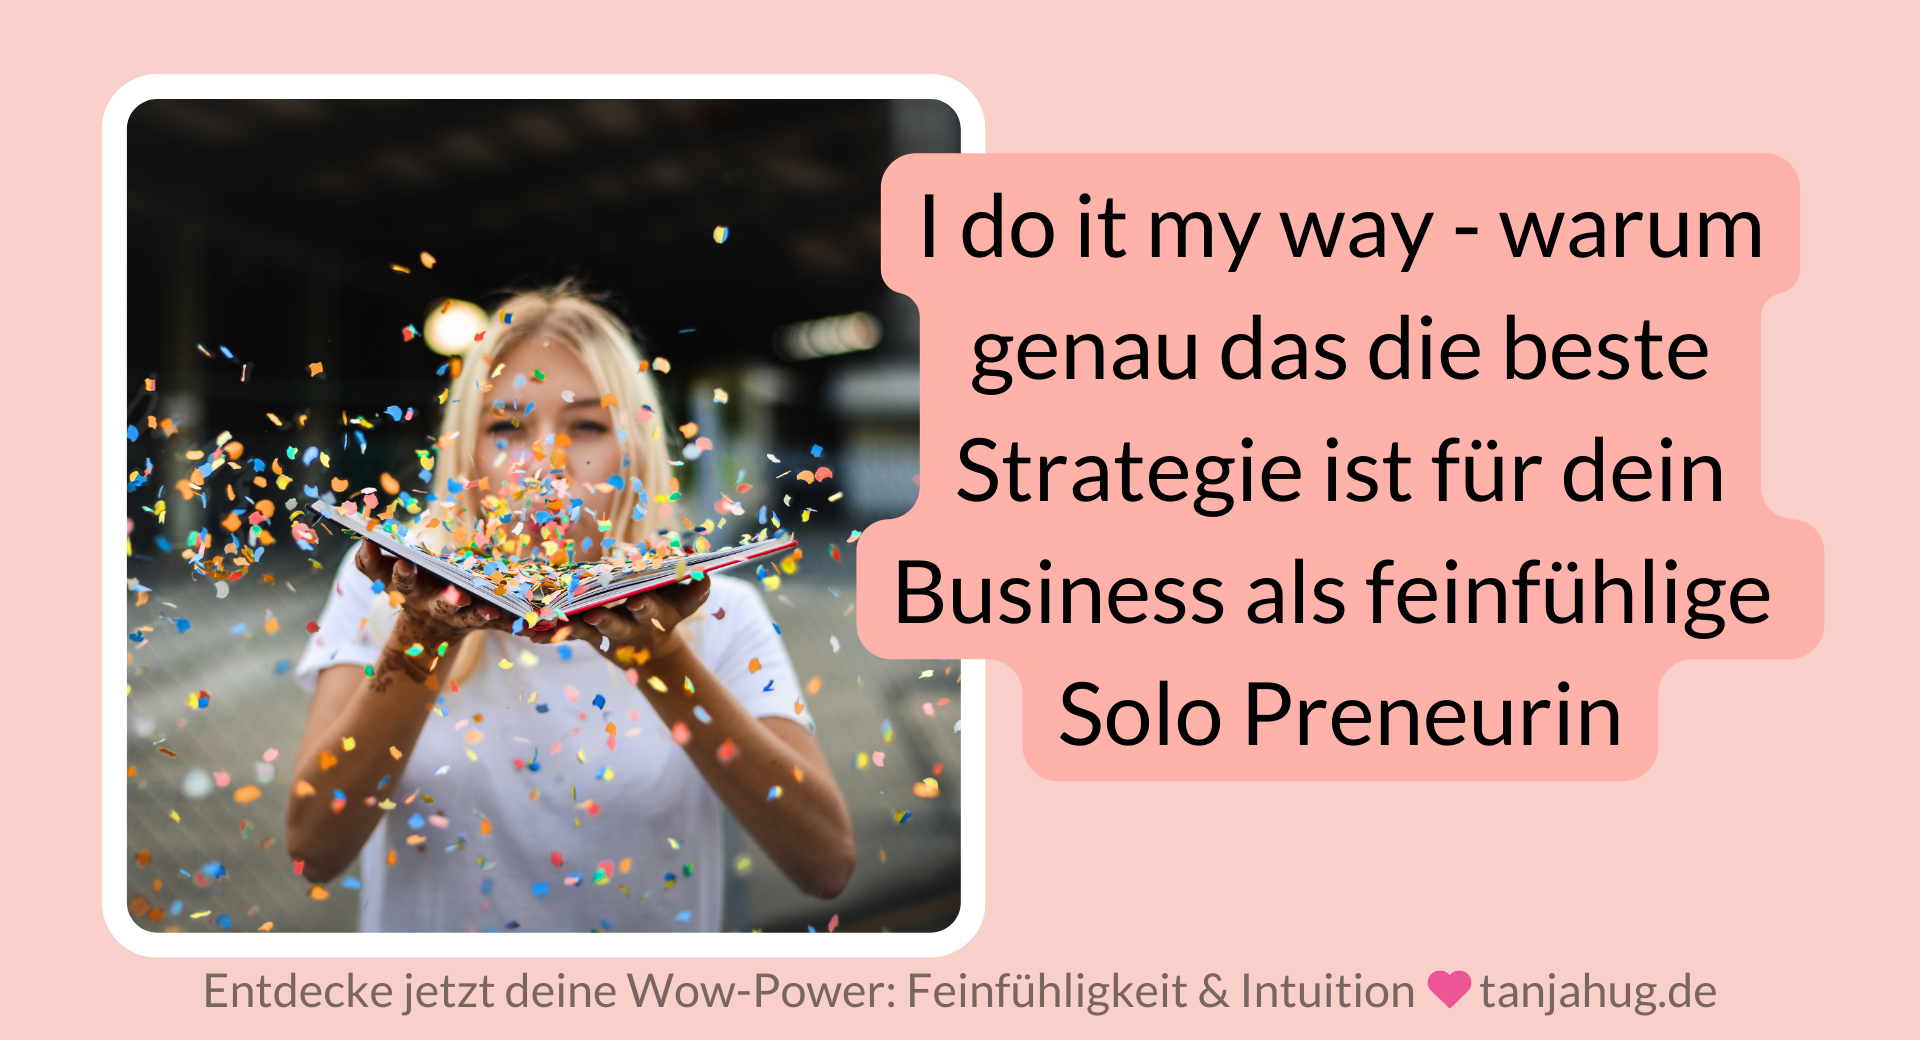 Business aufbauen als feinfühlige Frau - mehr im Blog auf tanjahug.de